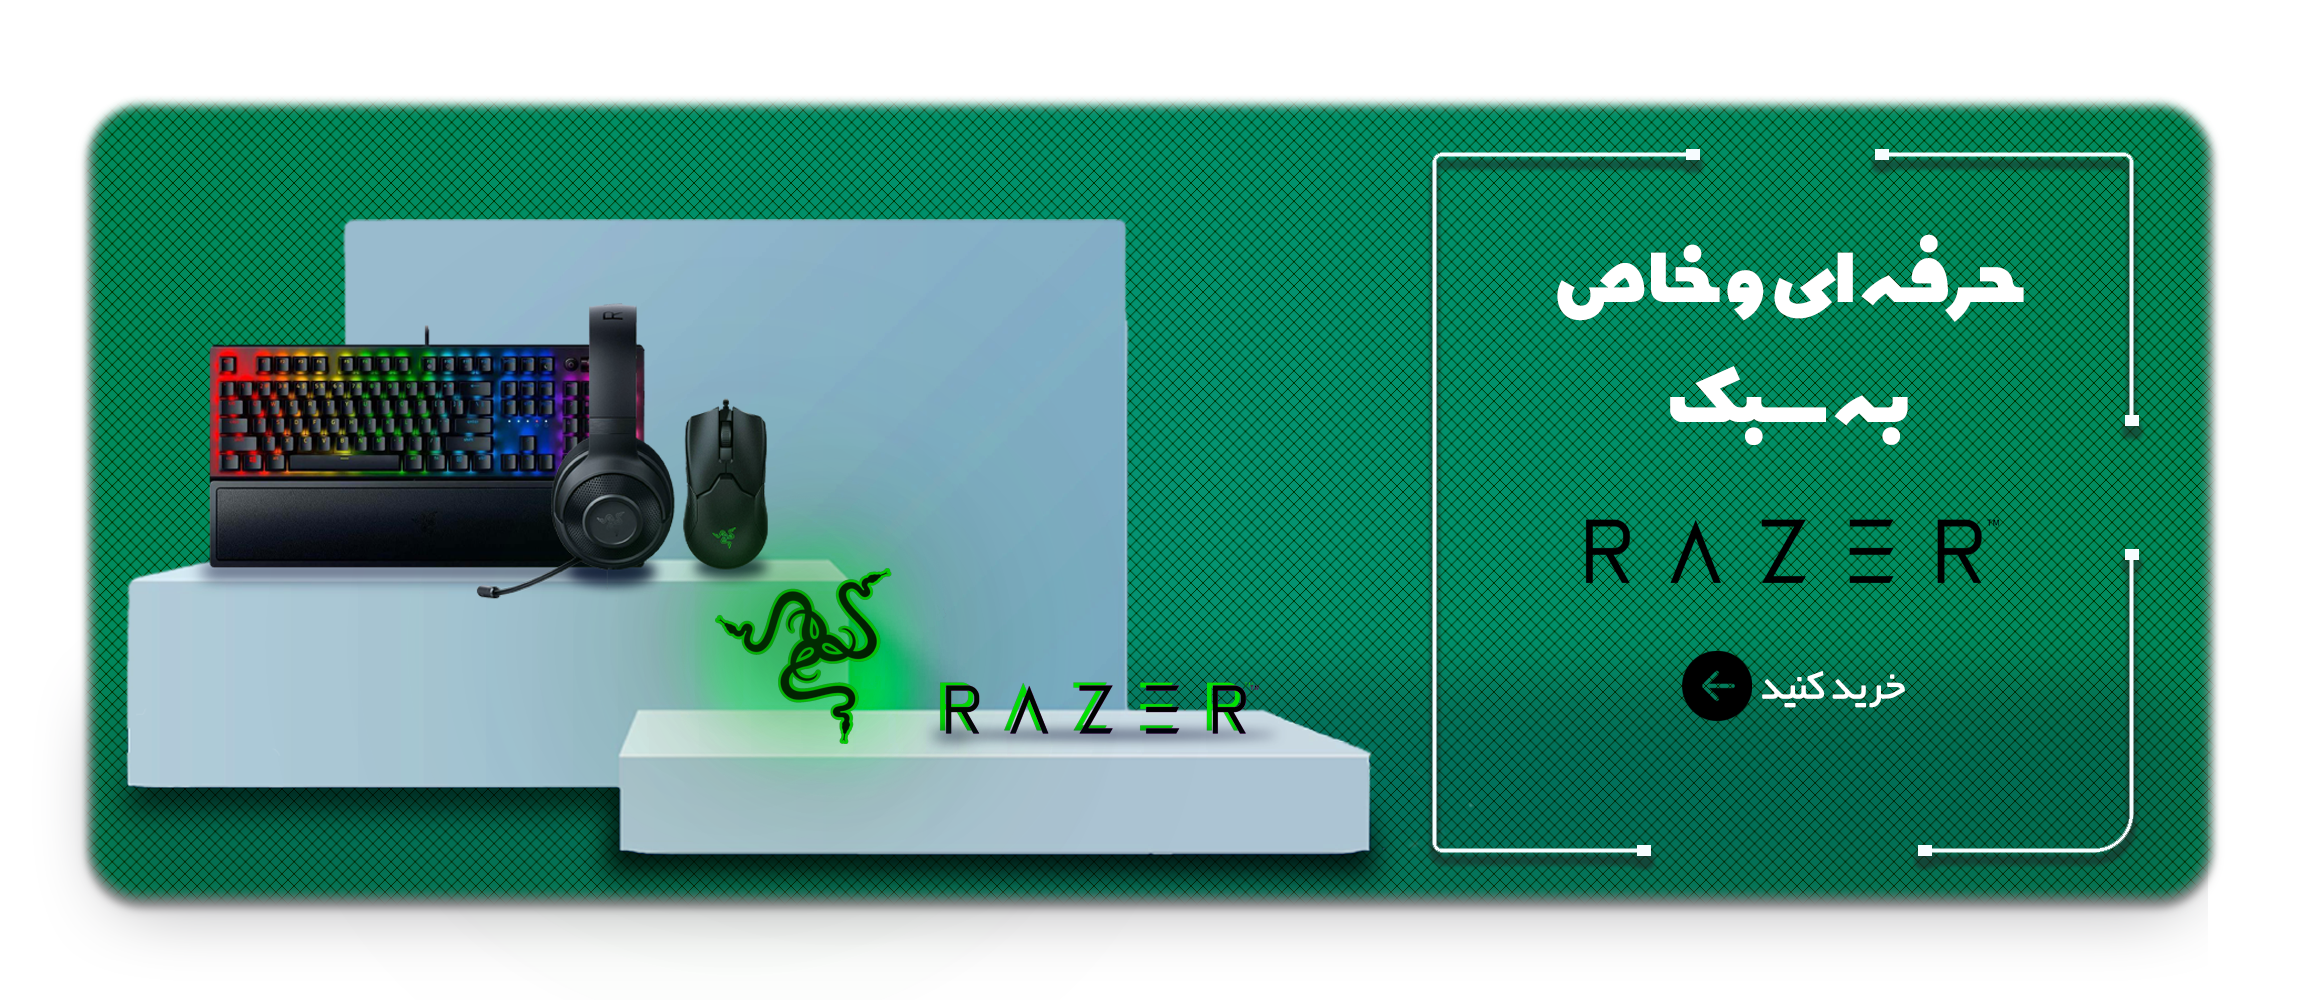 Razer Product